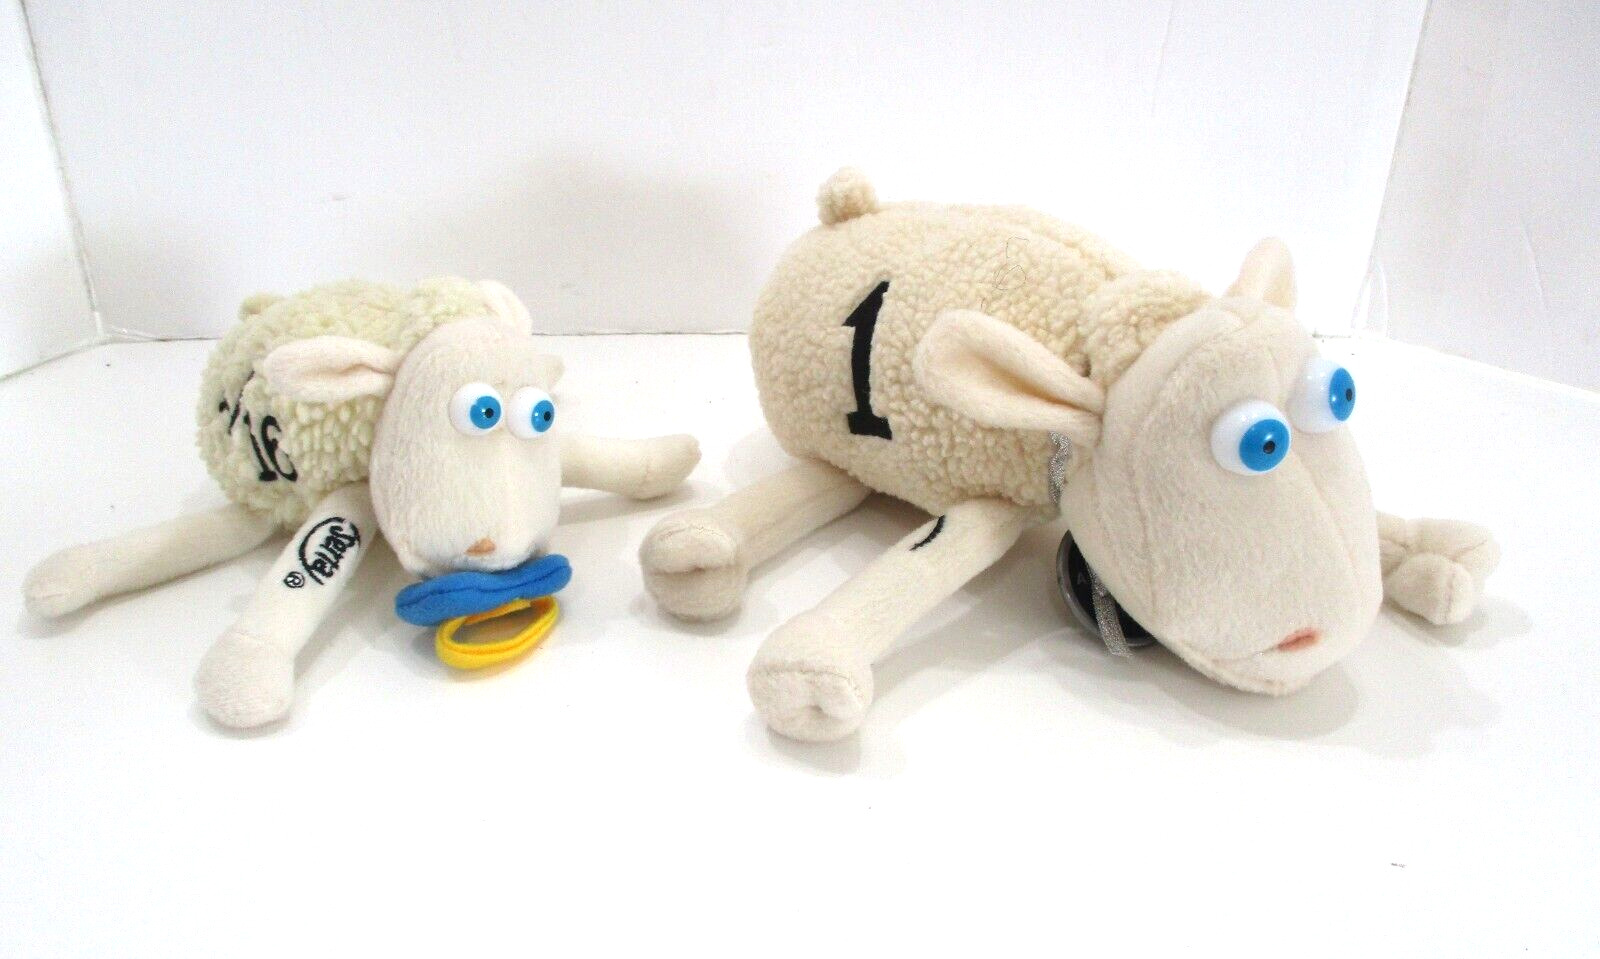 2 Serta Mattress Plush Sheep #1 & #1/16 the First & the Smallest Stuffed Animal